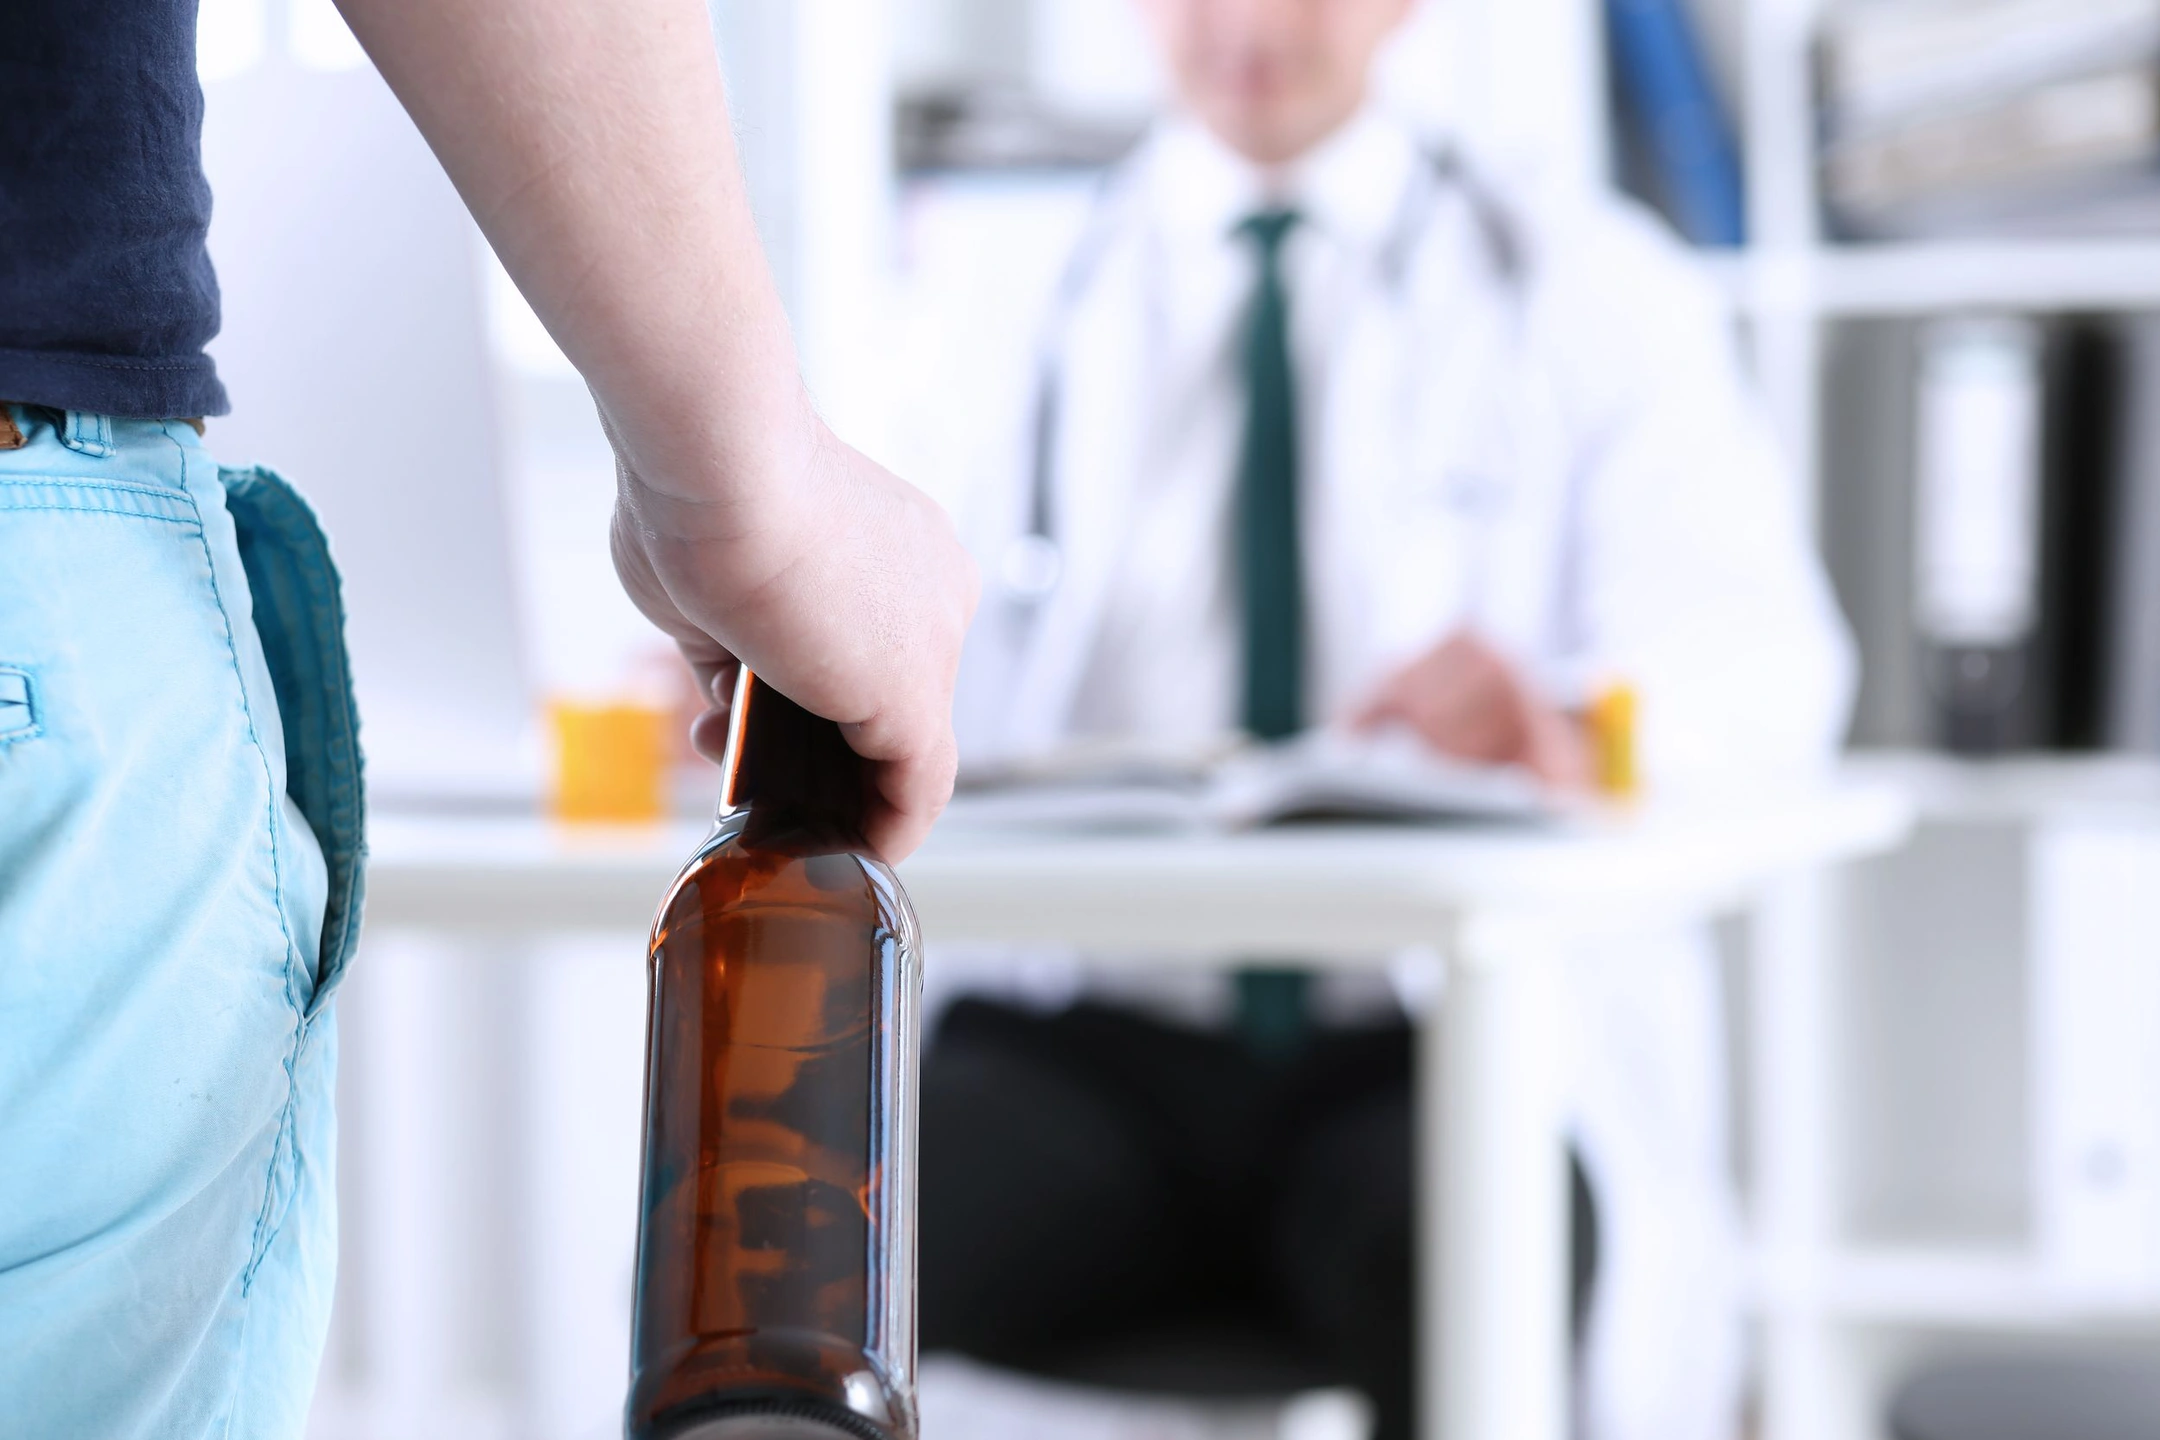 Нарколог Холдин: третья стадия опьянения грозит комой и смертью